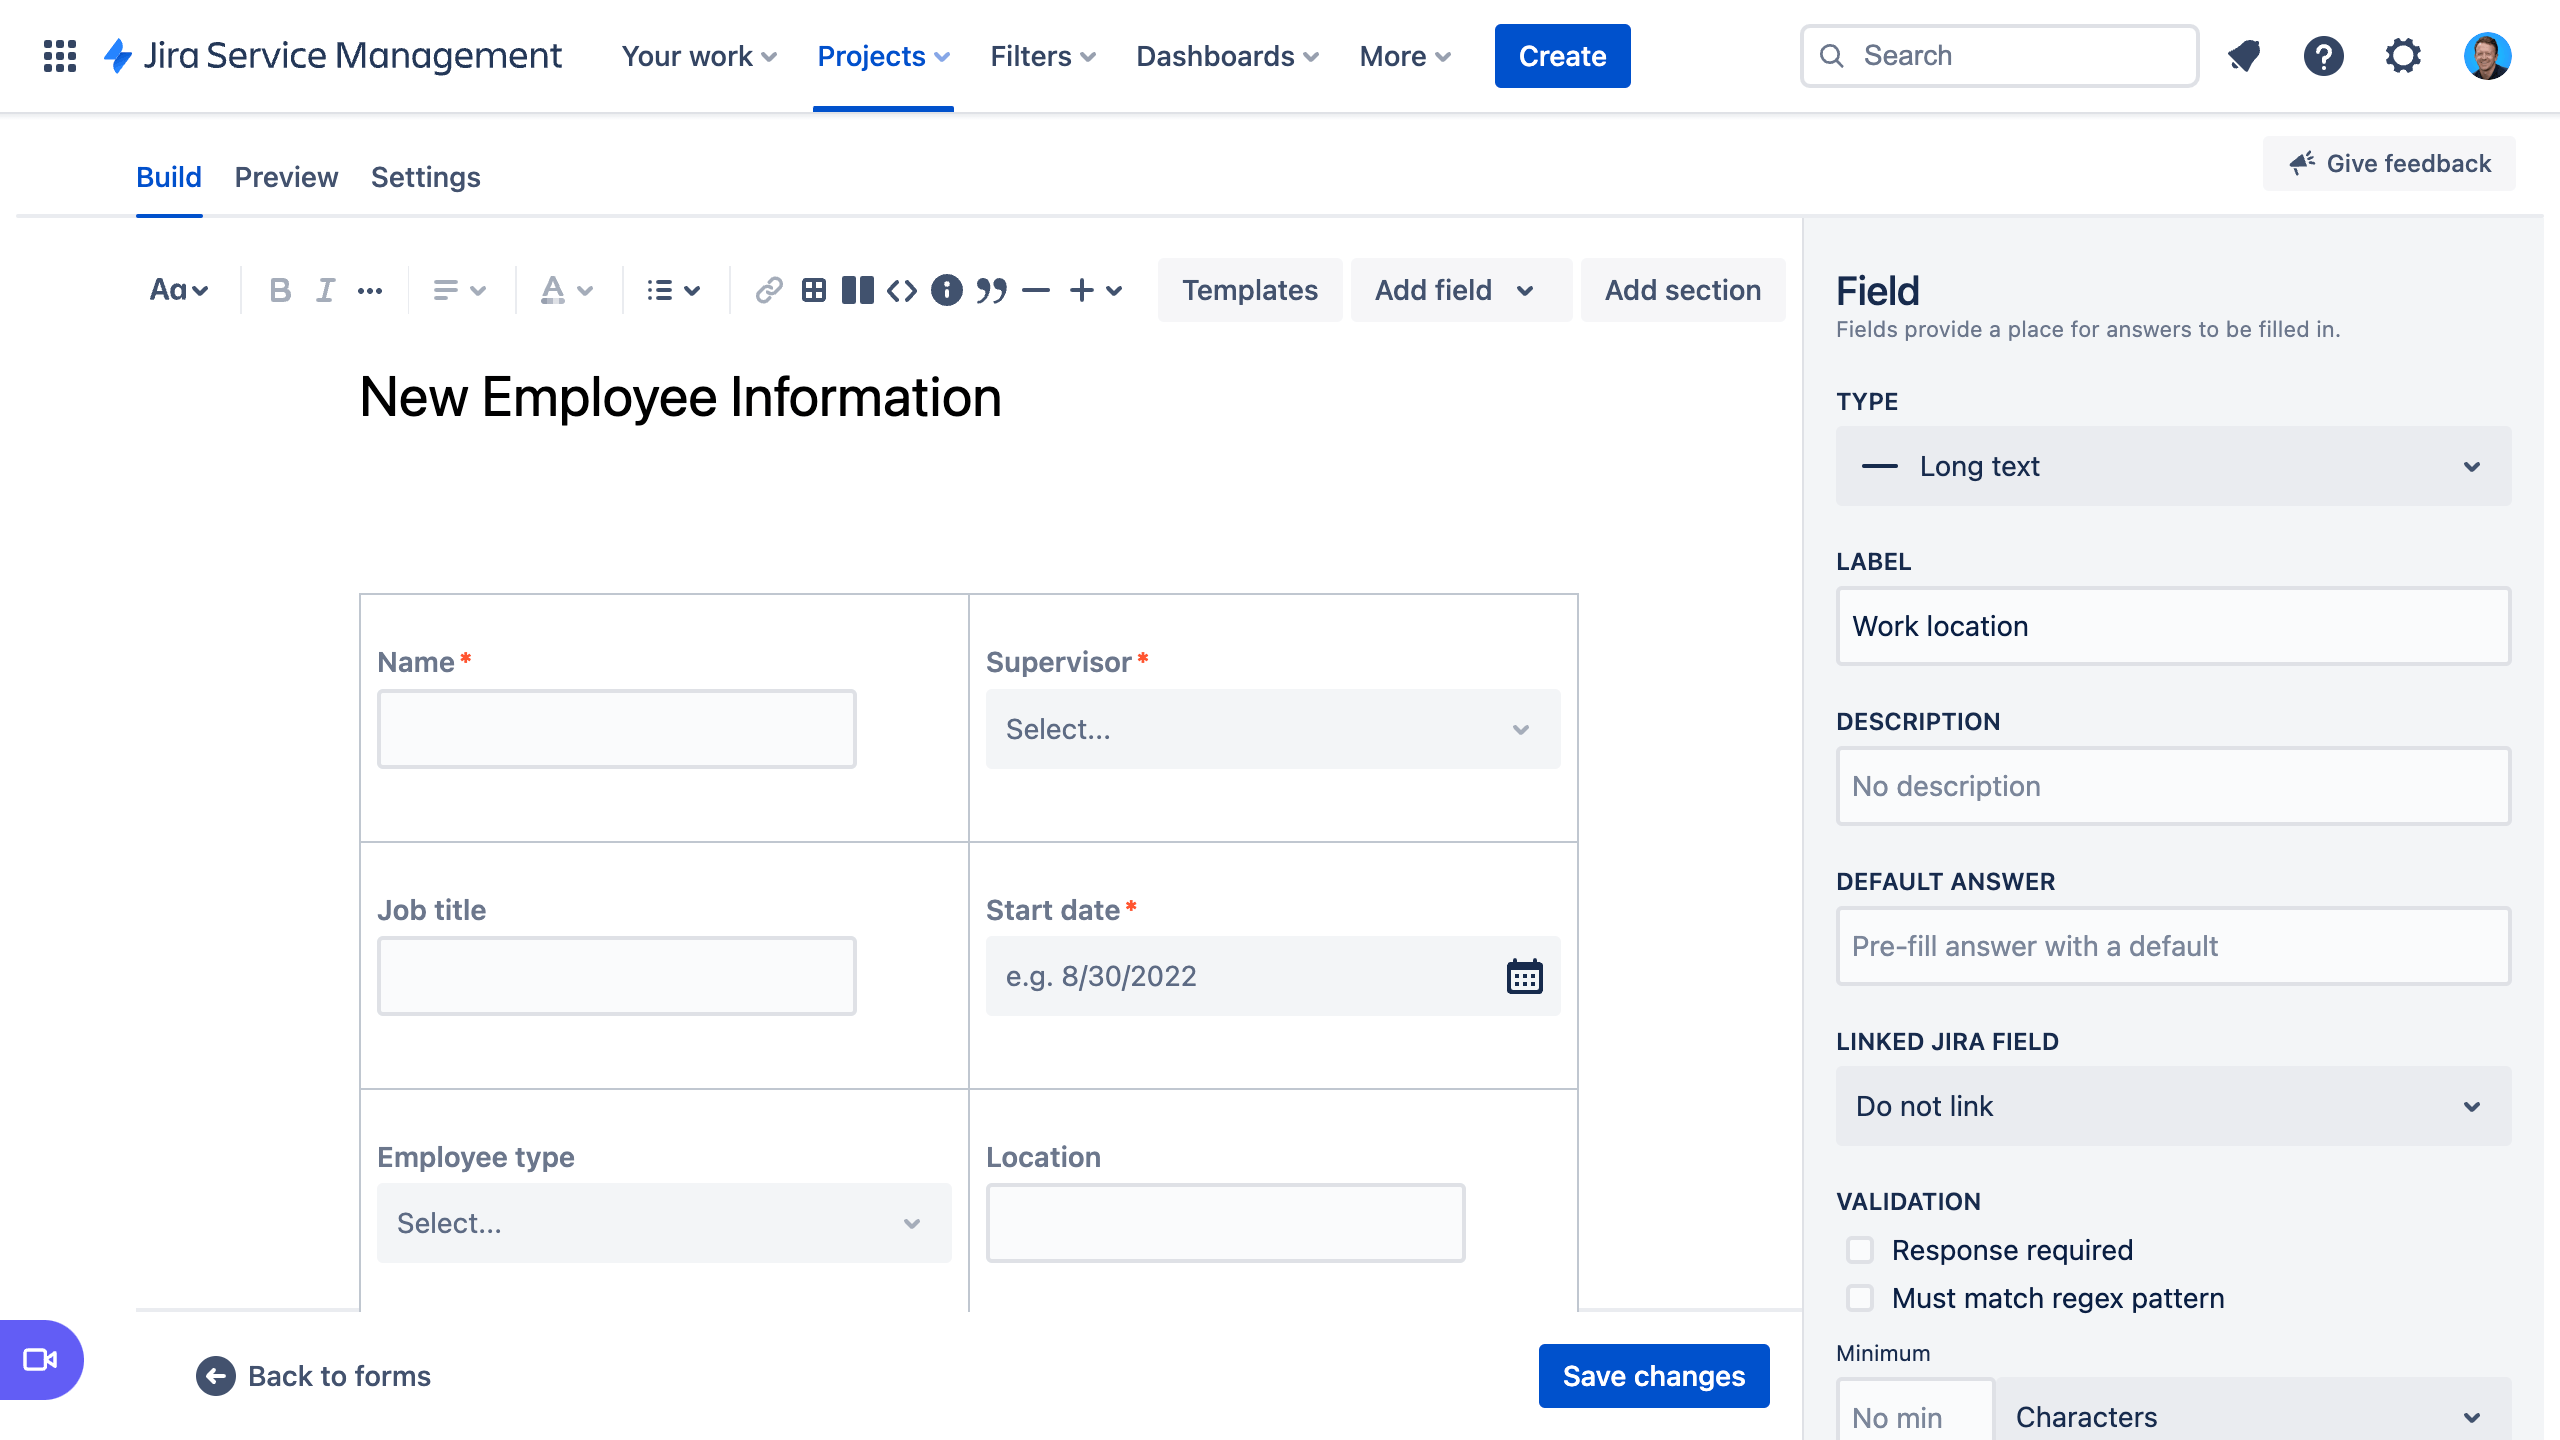 снимок экрана: форма для сбора информации о новом сотруднике